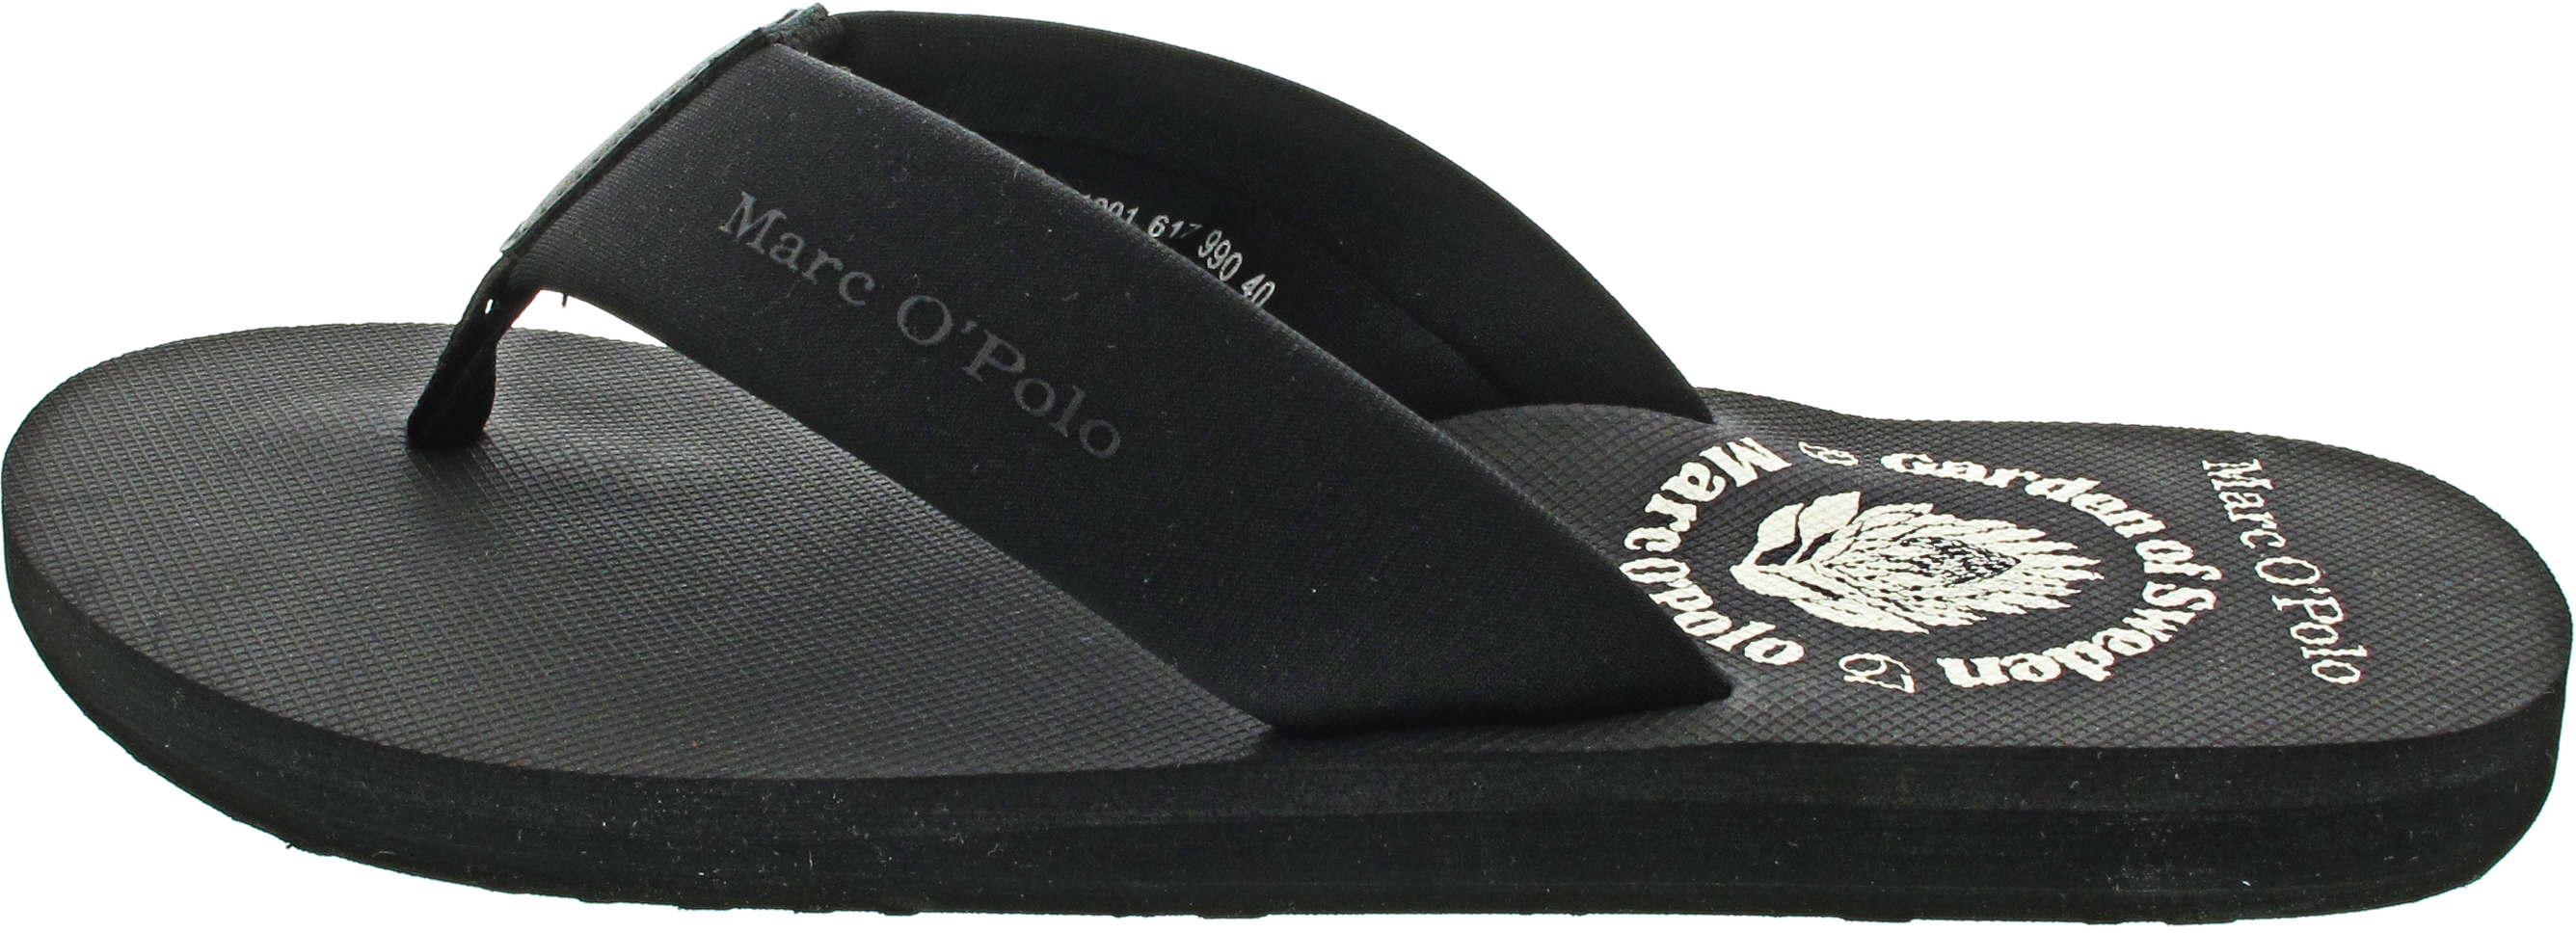 Marc O'Polo Beach Sandal